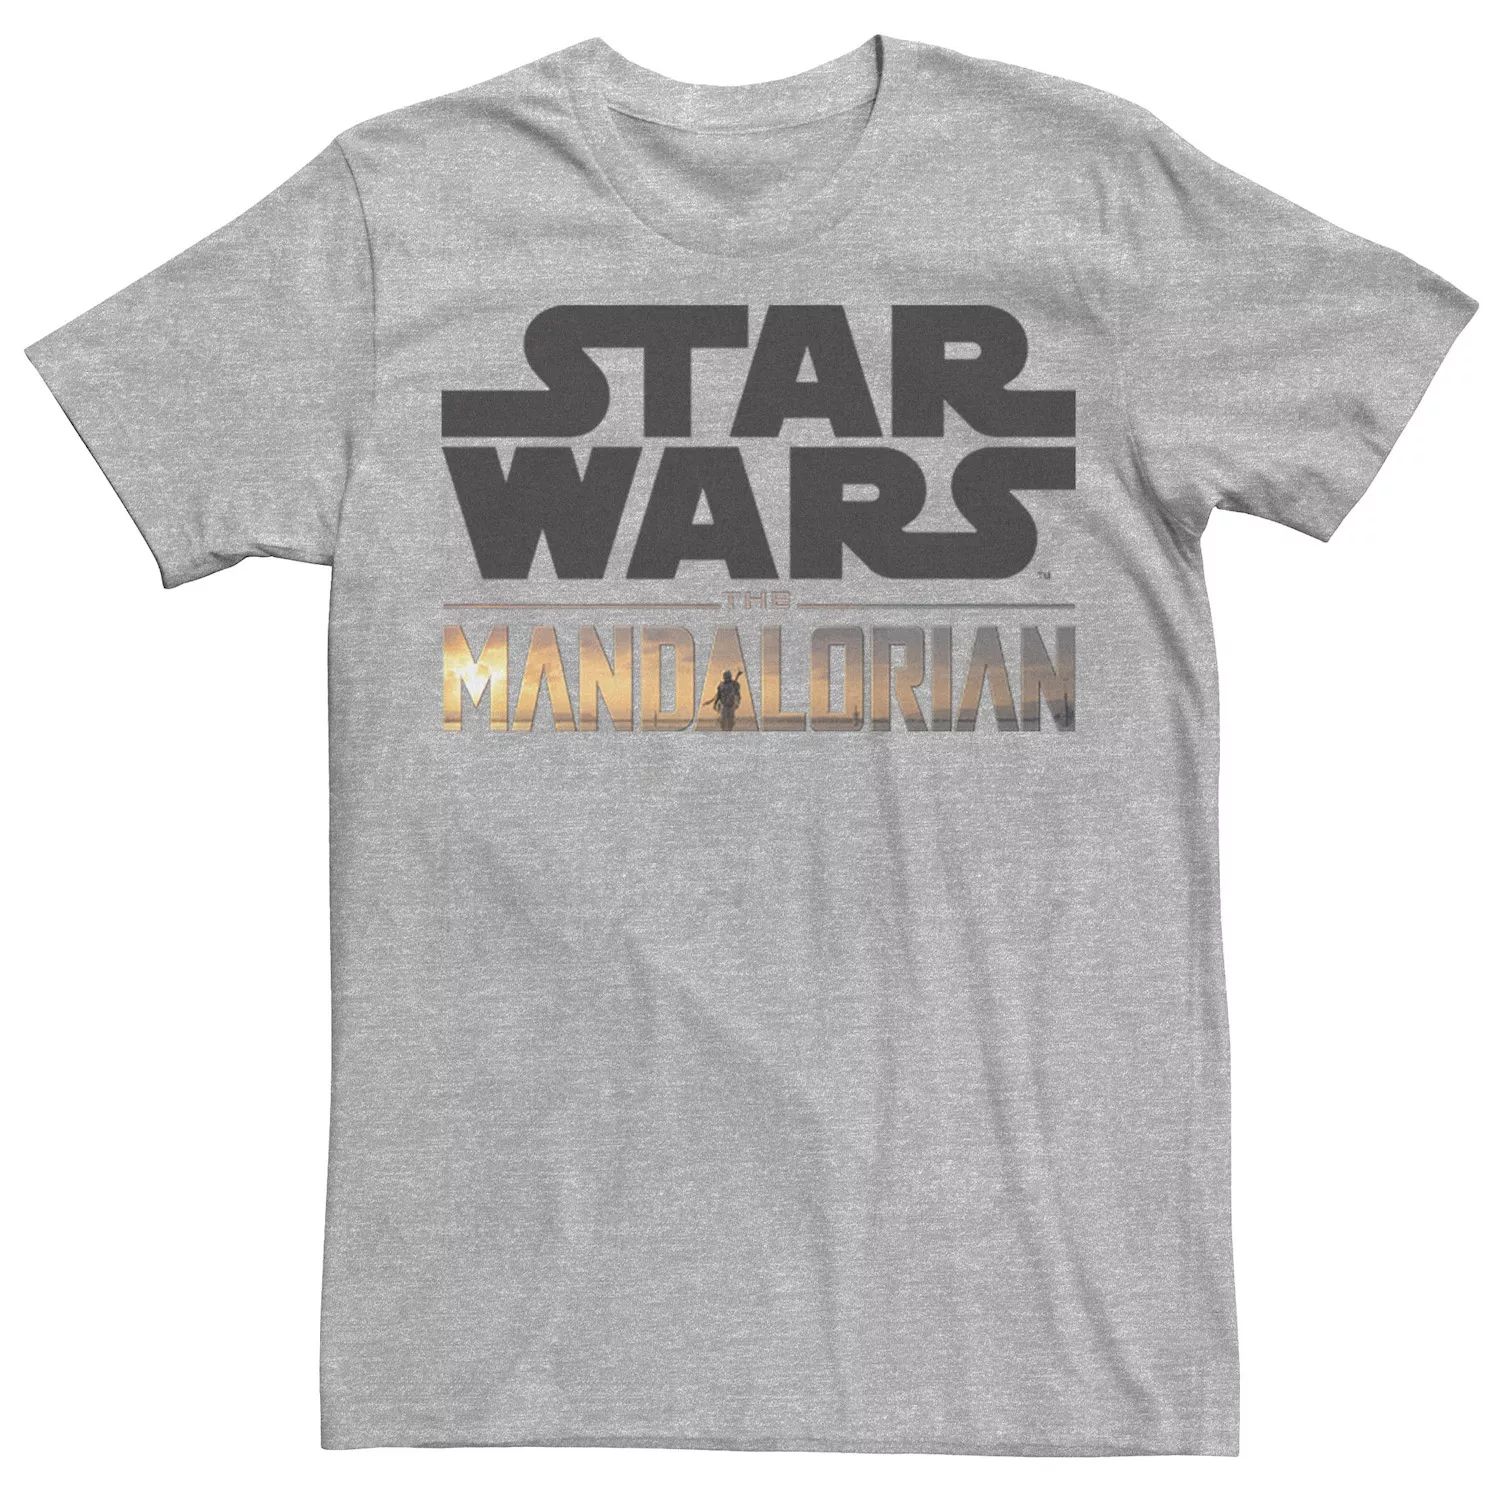 Мужская футболка с логотипом The Mandalorian Star Wars цена и фото